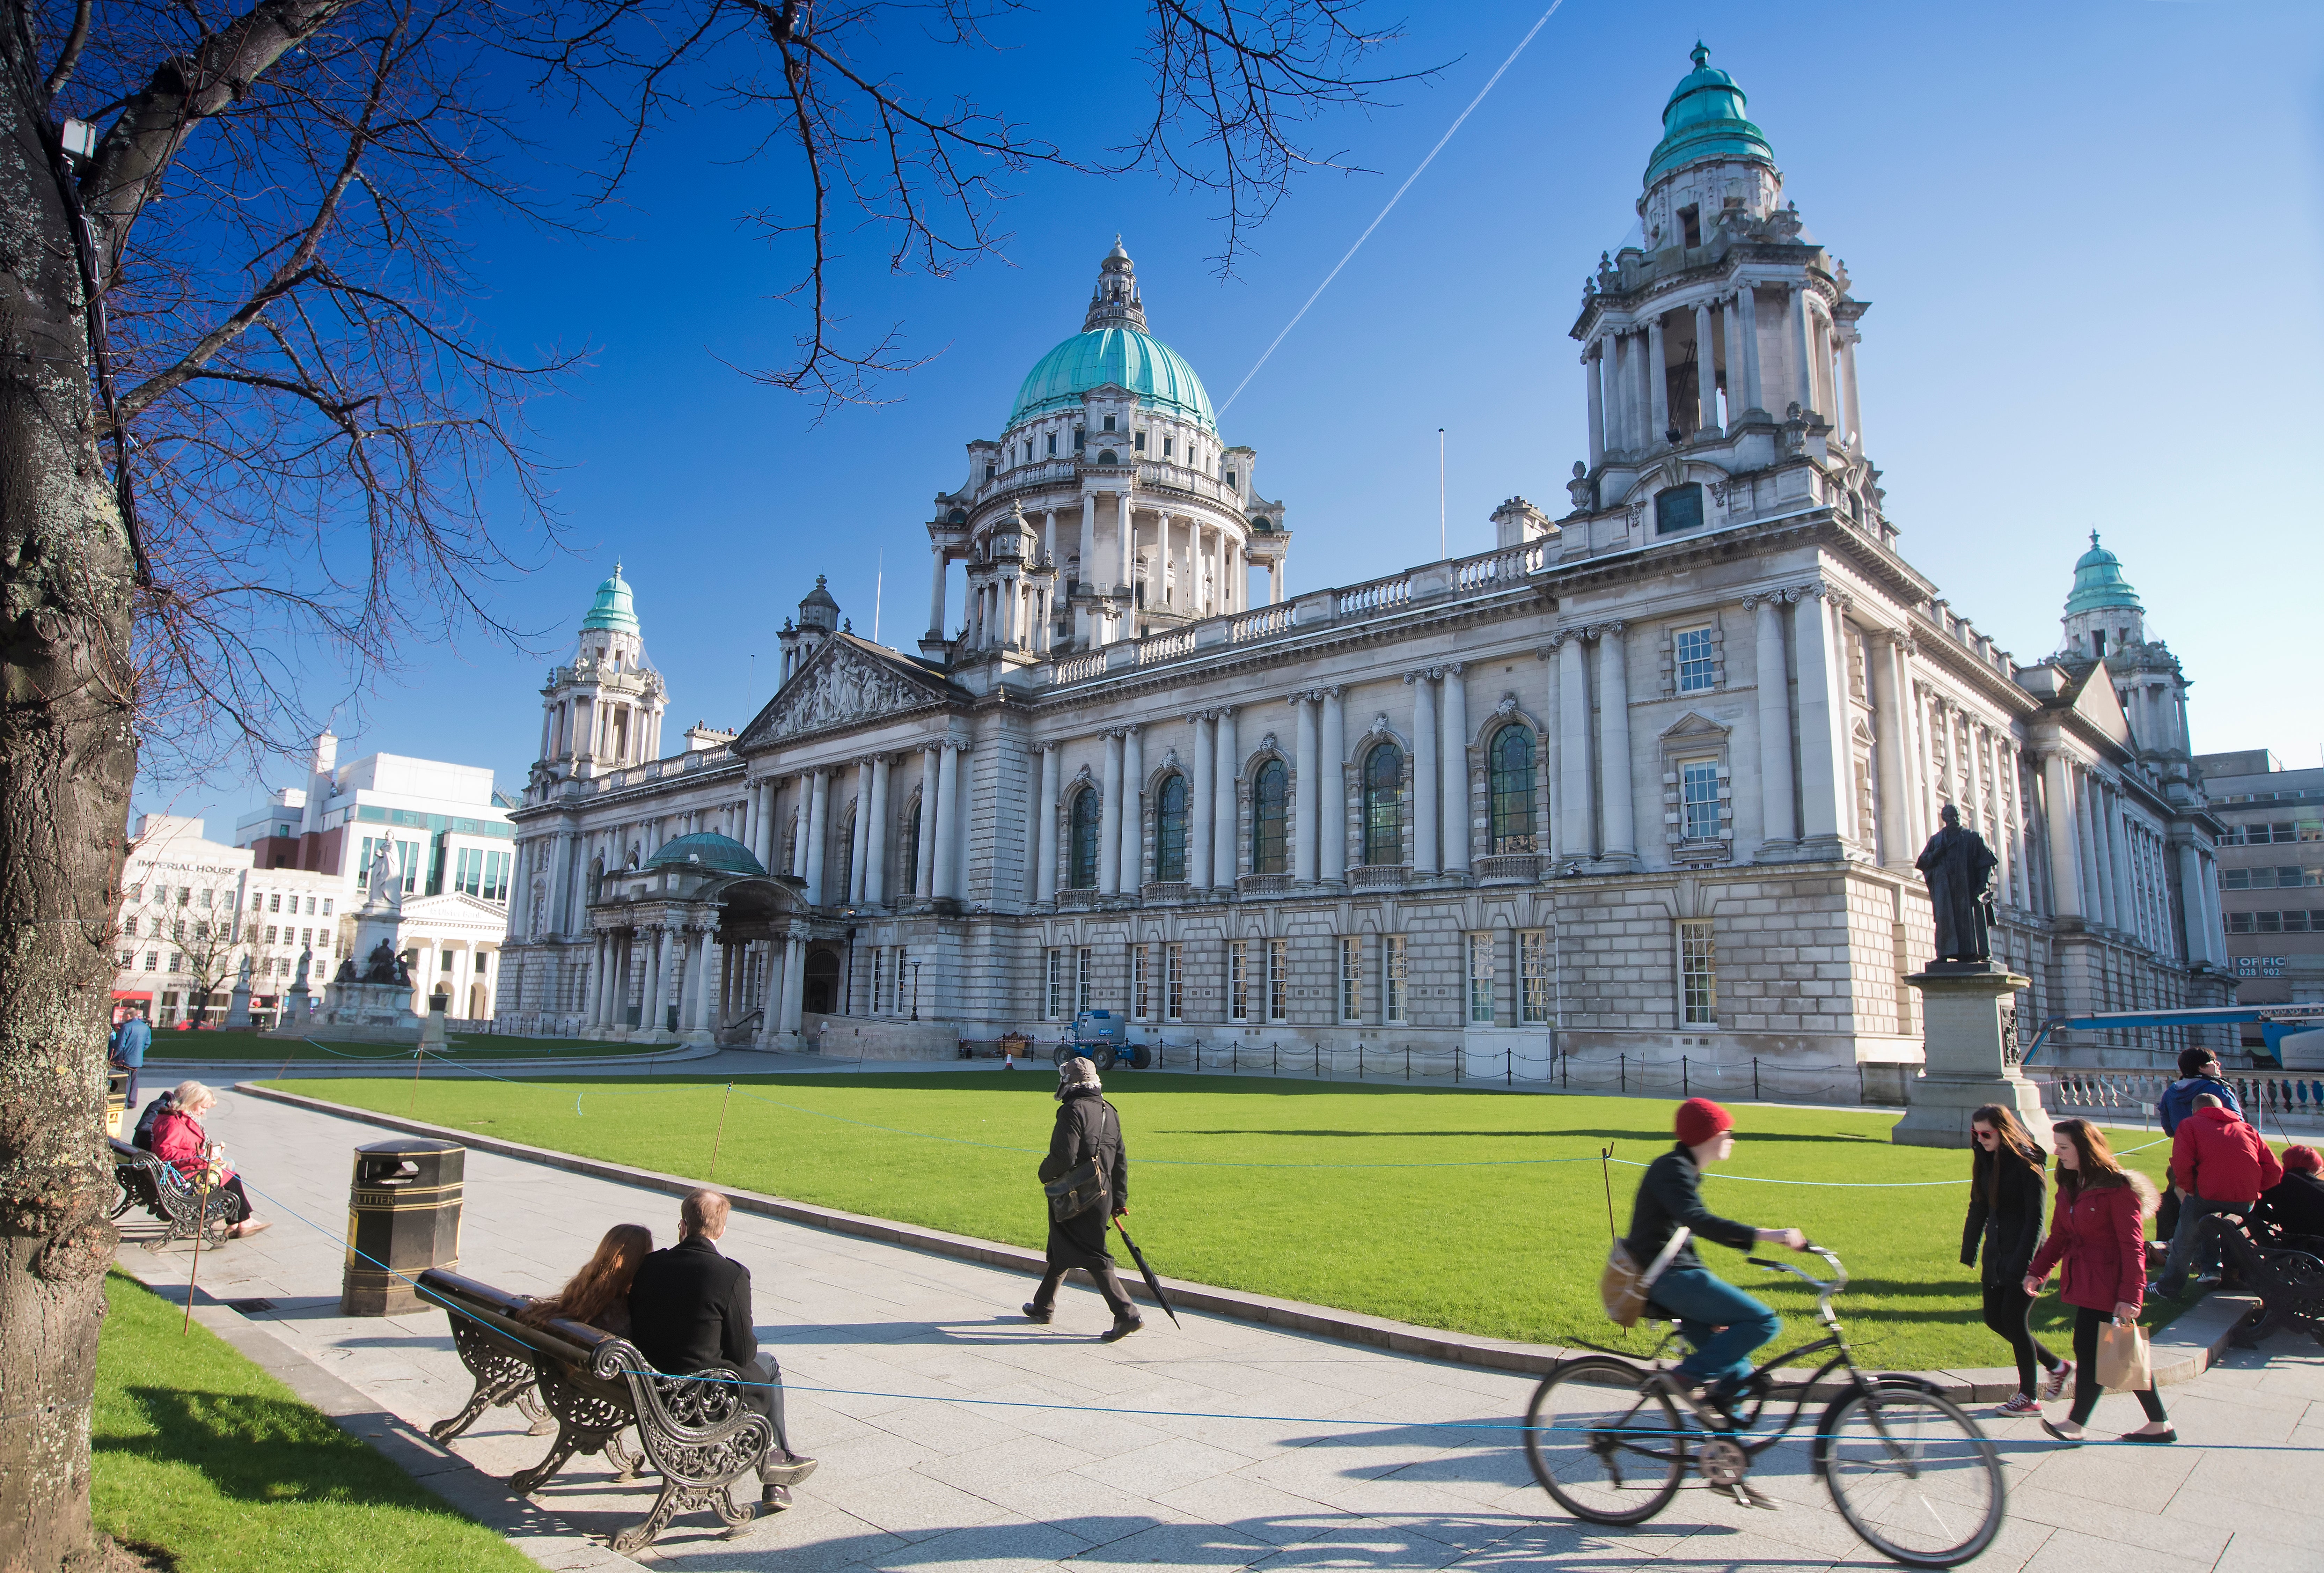 Belfast’s grand City Hall